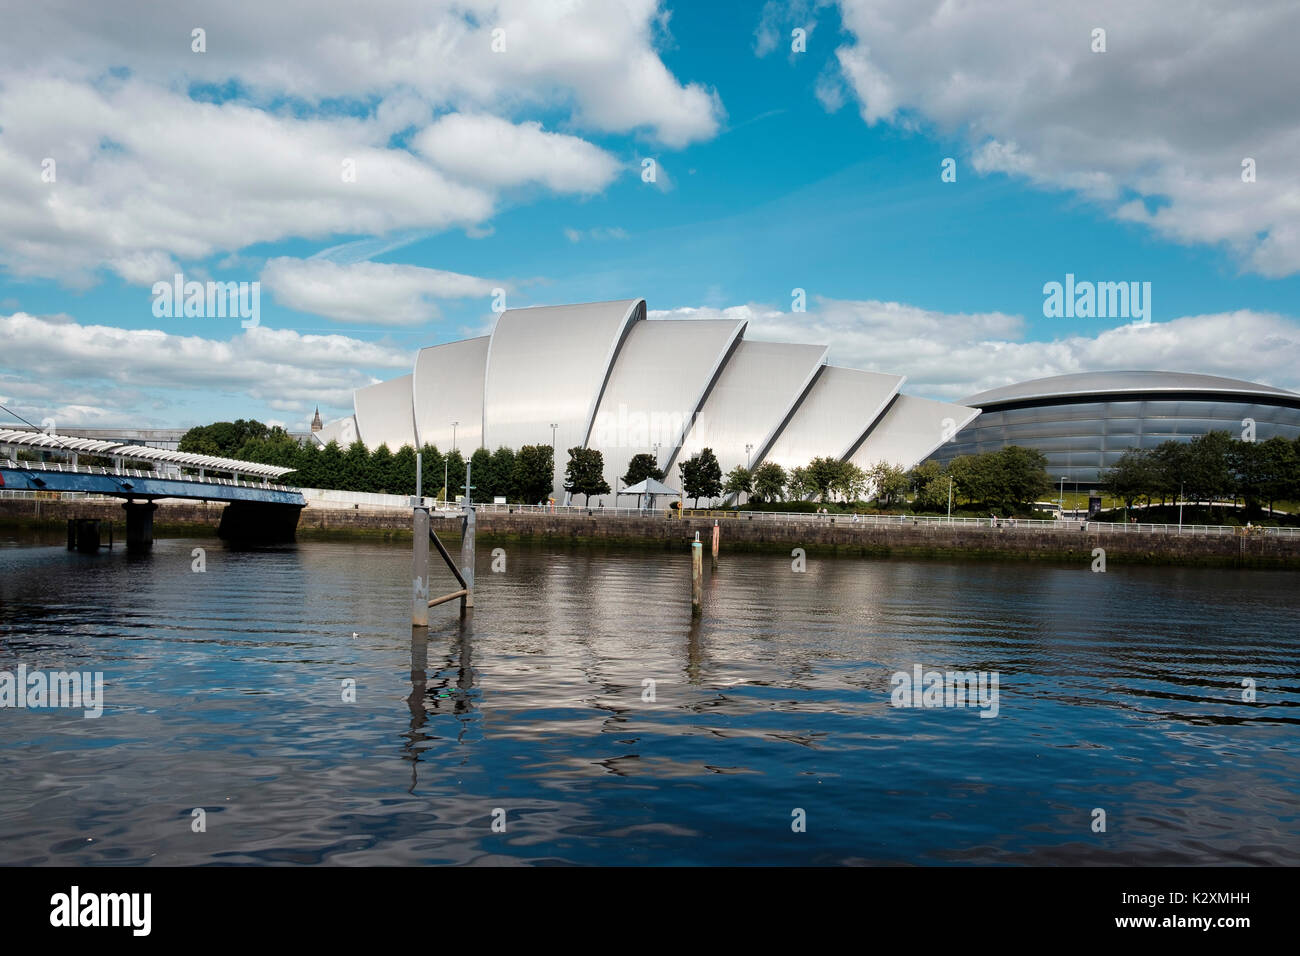 Développement de l'architecture moderne salle de concert Armadillo SEC sur les rives de la rivière Clyde à Glasgow, Ecosse Banque D'Images